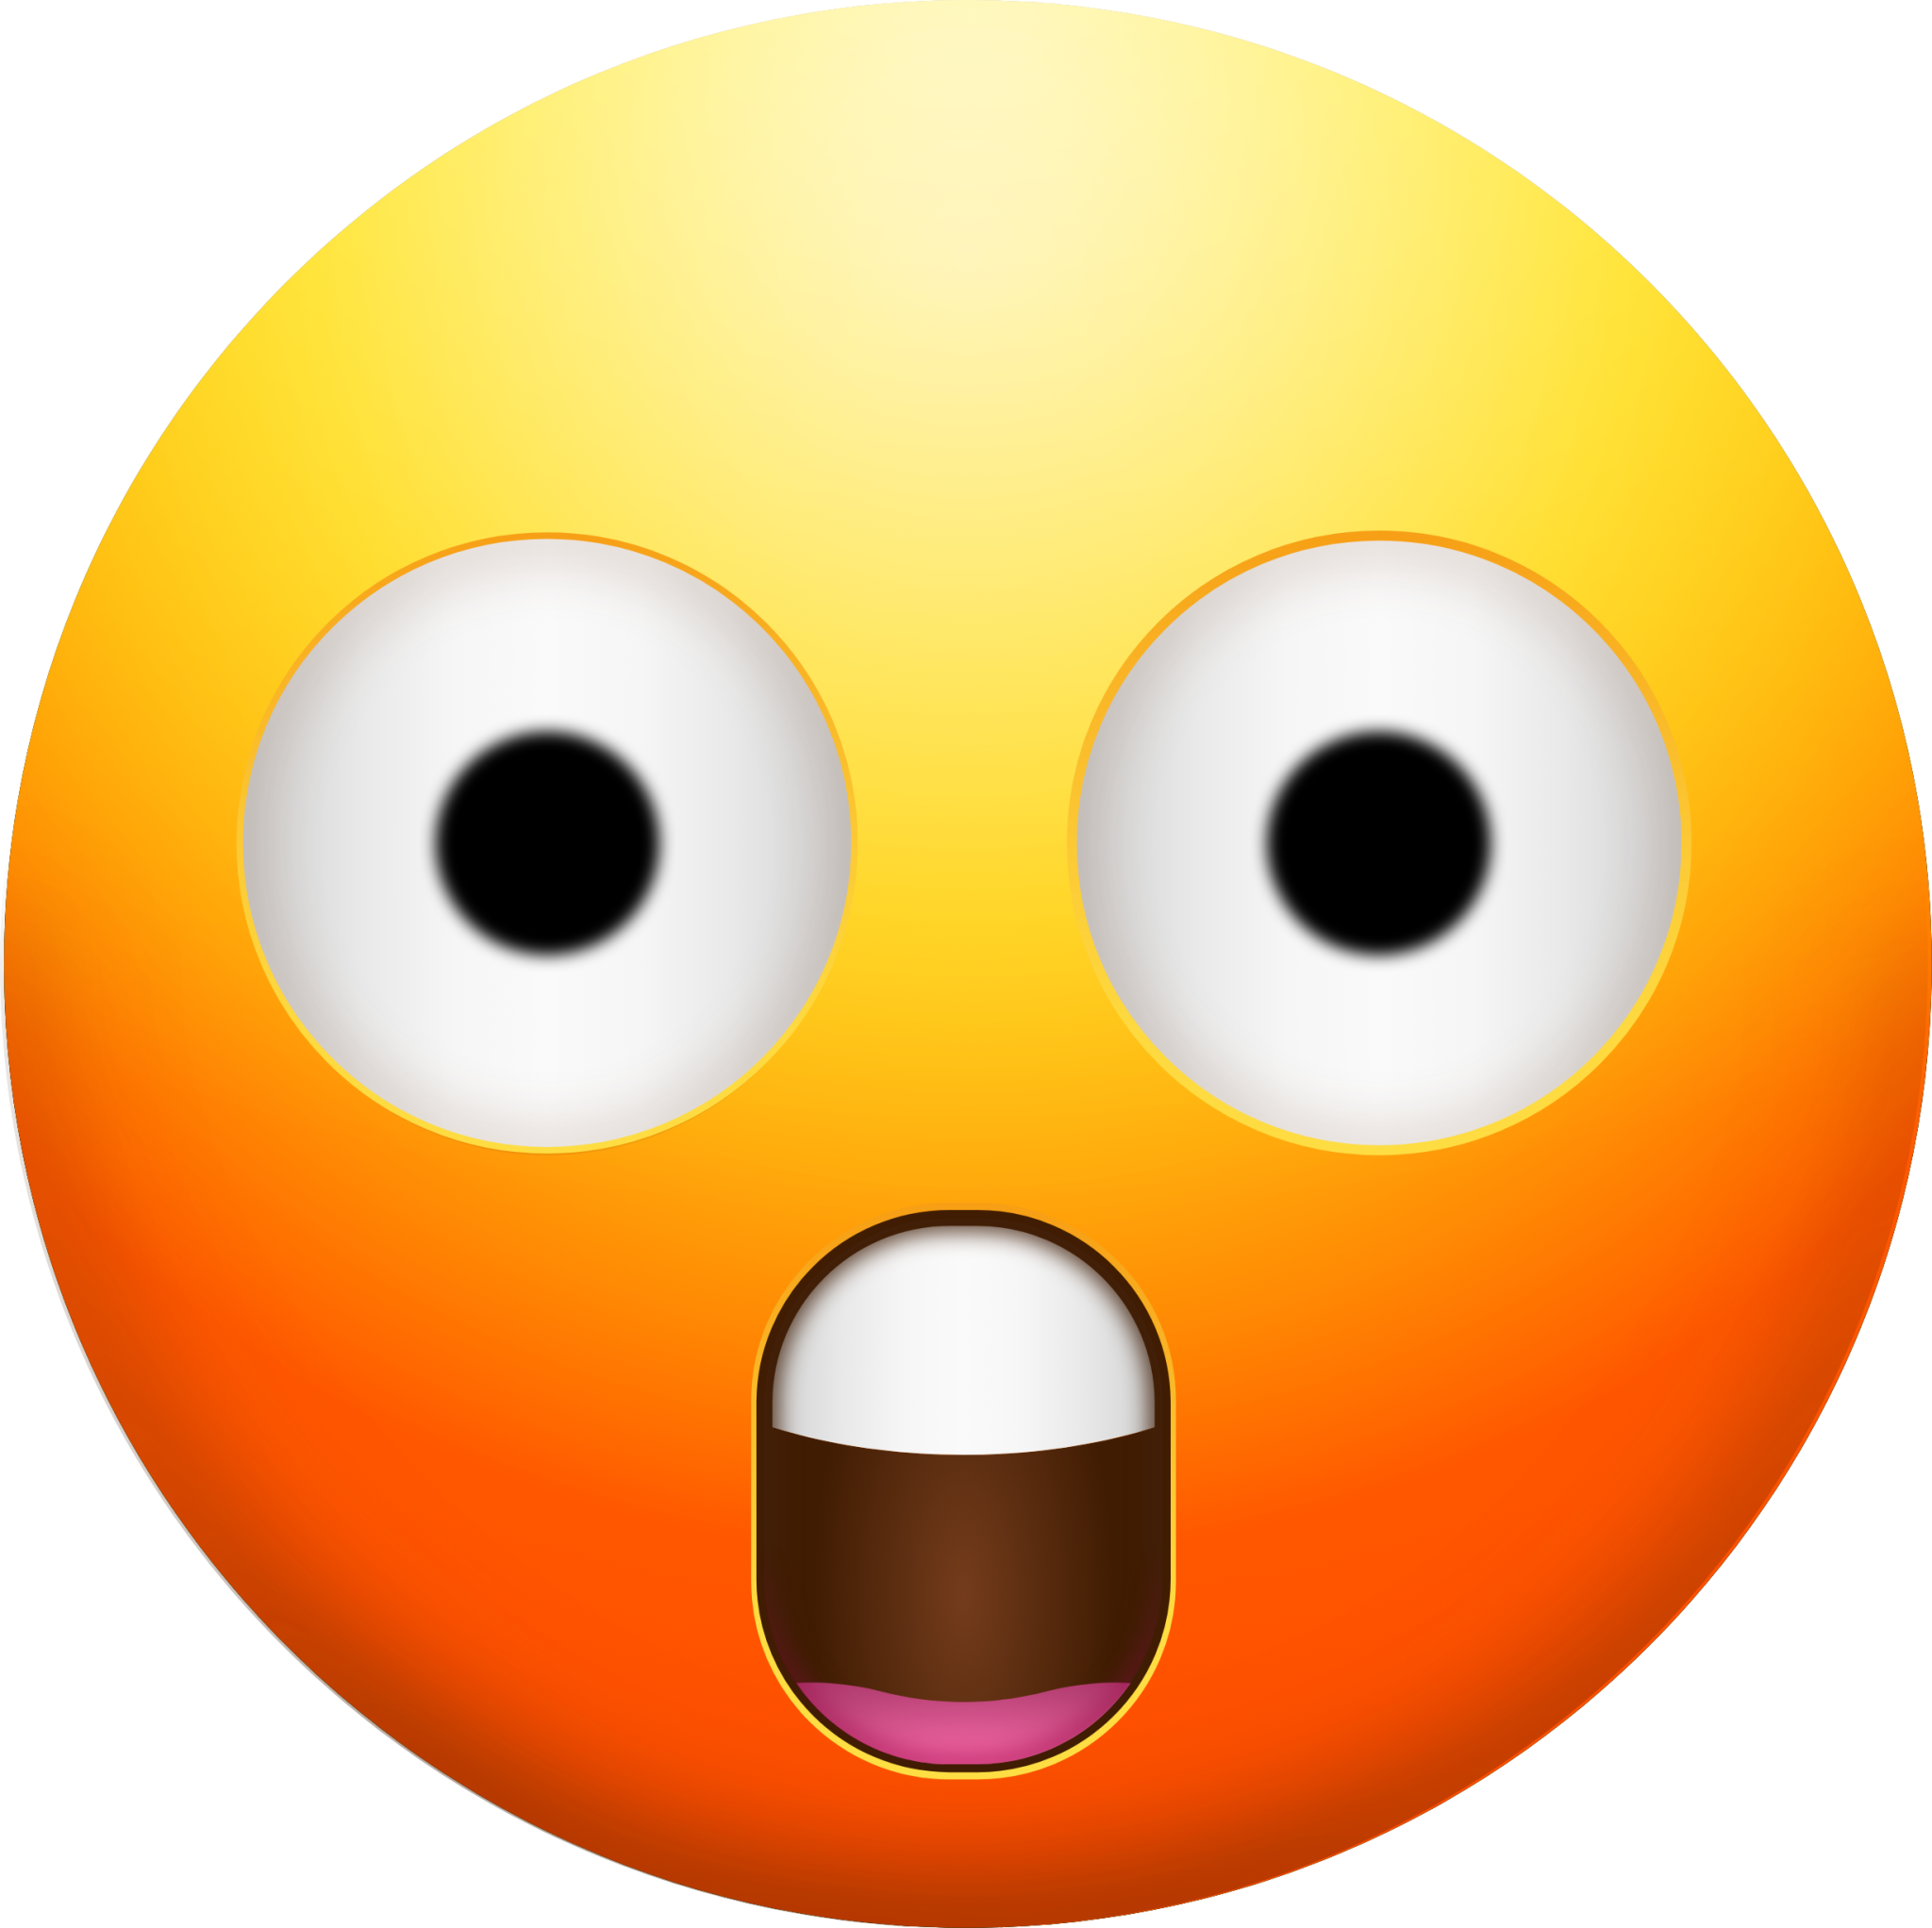 Painfully Shocked Face emoji